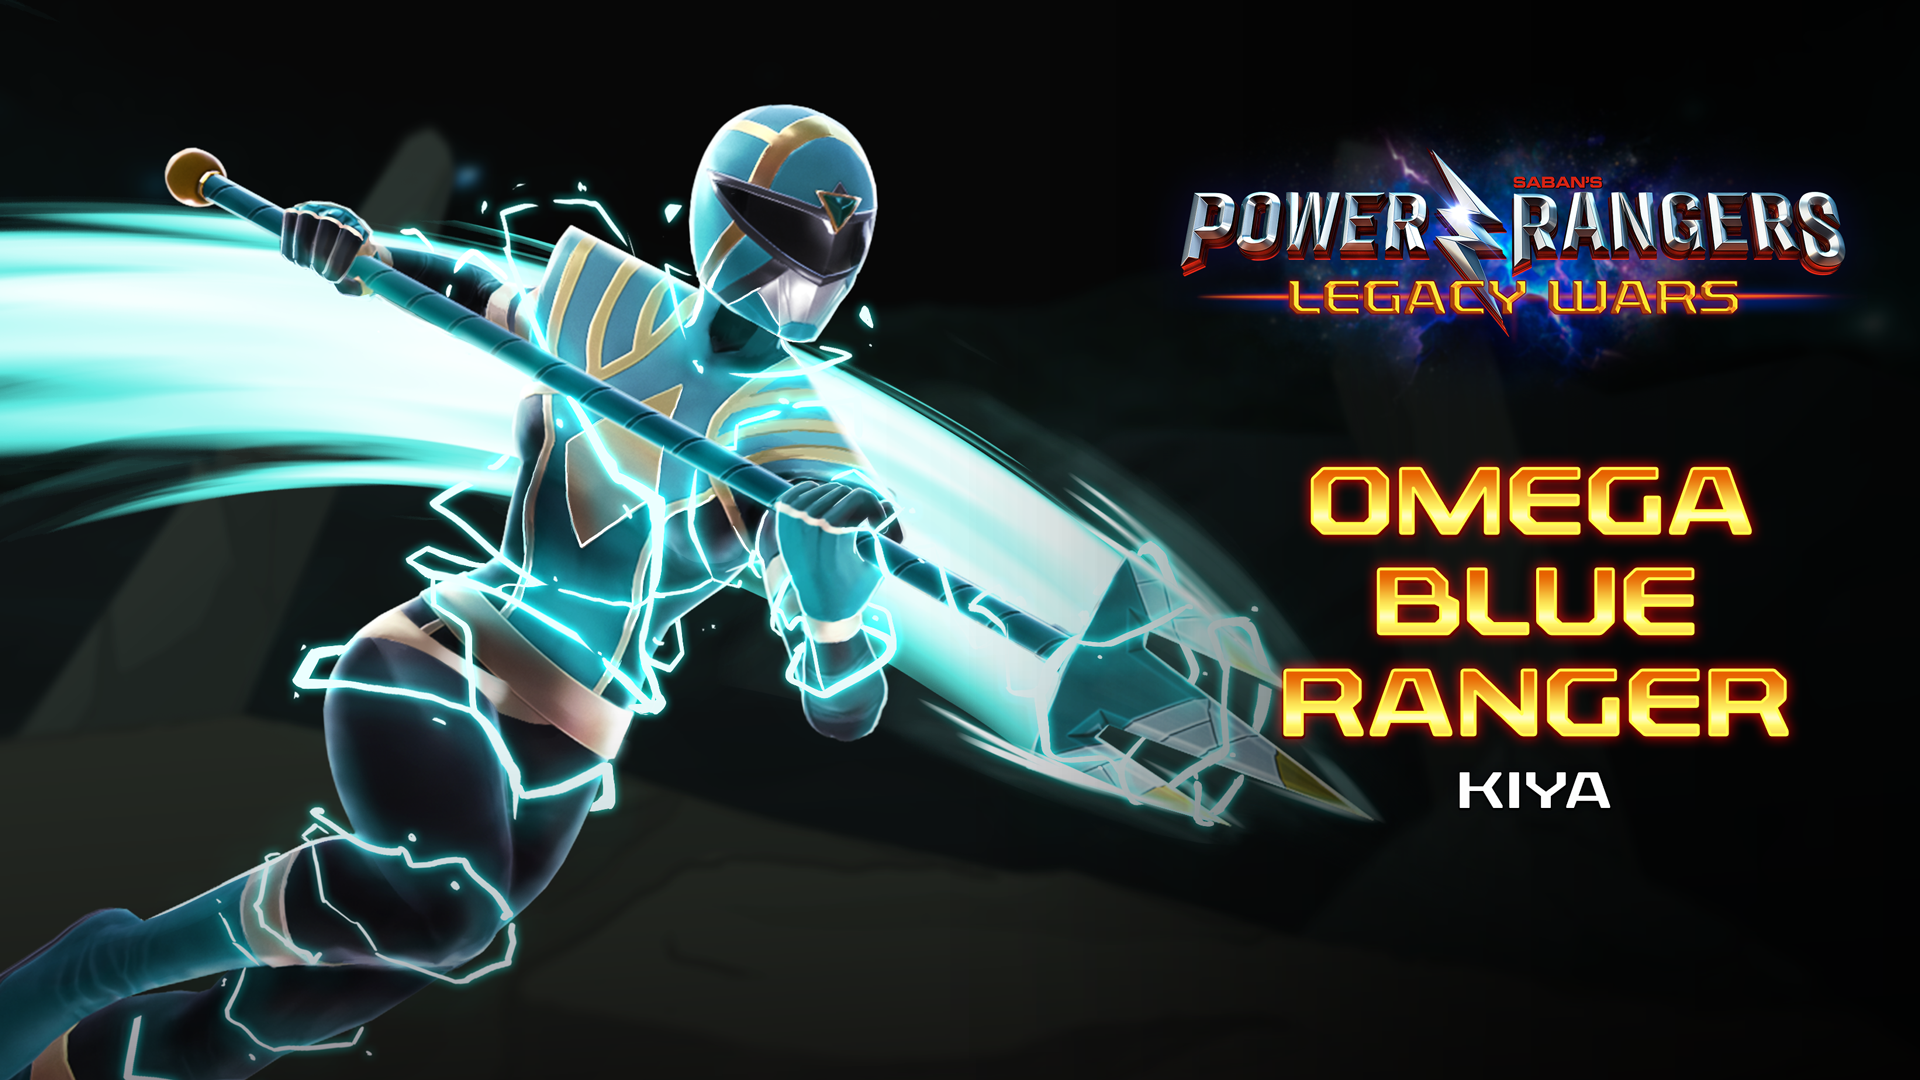 Power Rangers | Kiya, Omega Blue Ranger, enters the Grid!